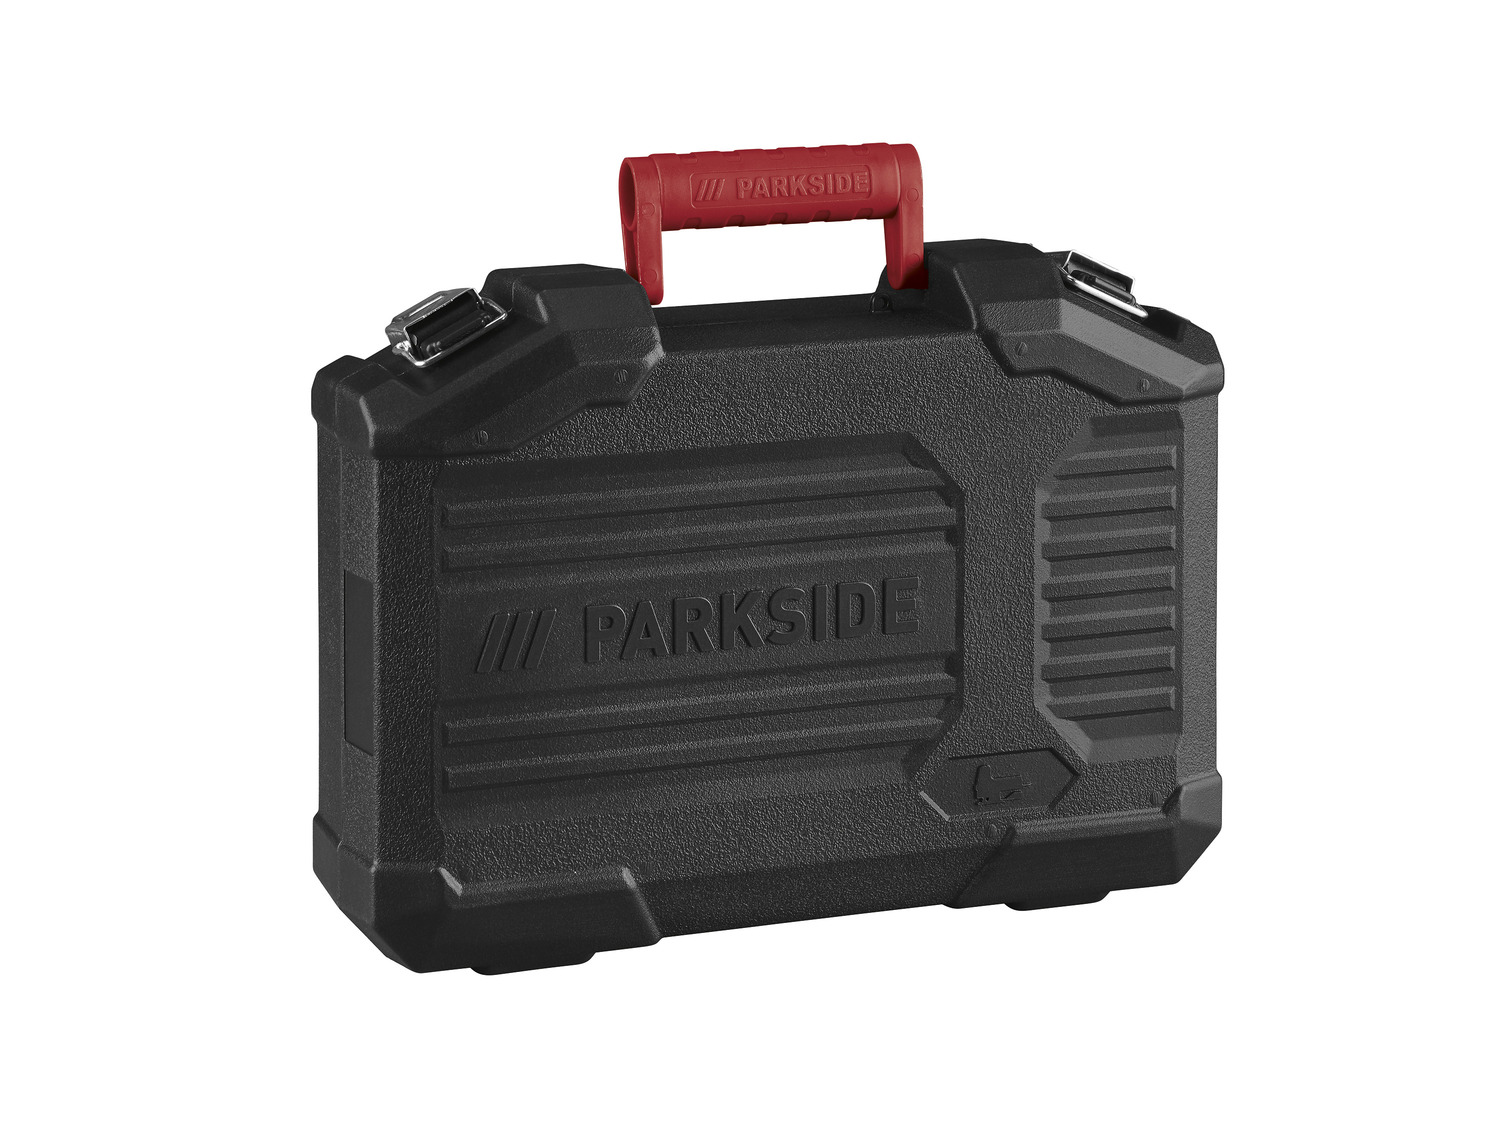 Laserf… »PSTK 800 PARKSIDE® mit E3«, Pendelhubstichsäge